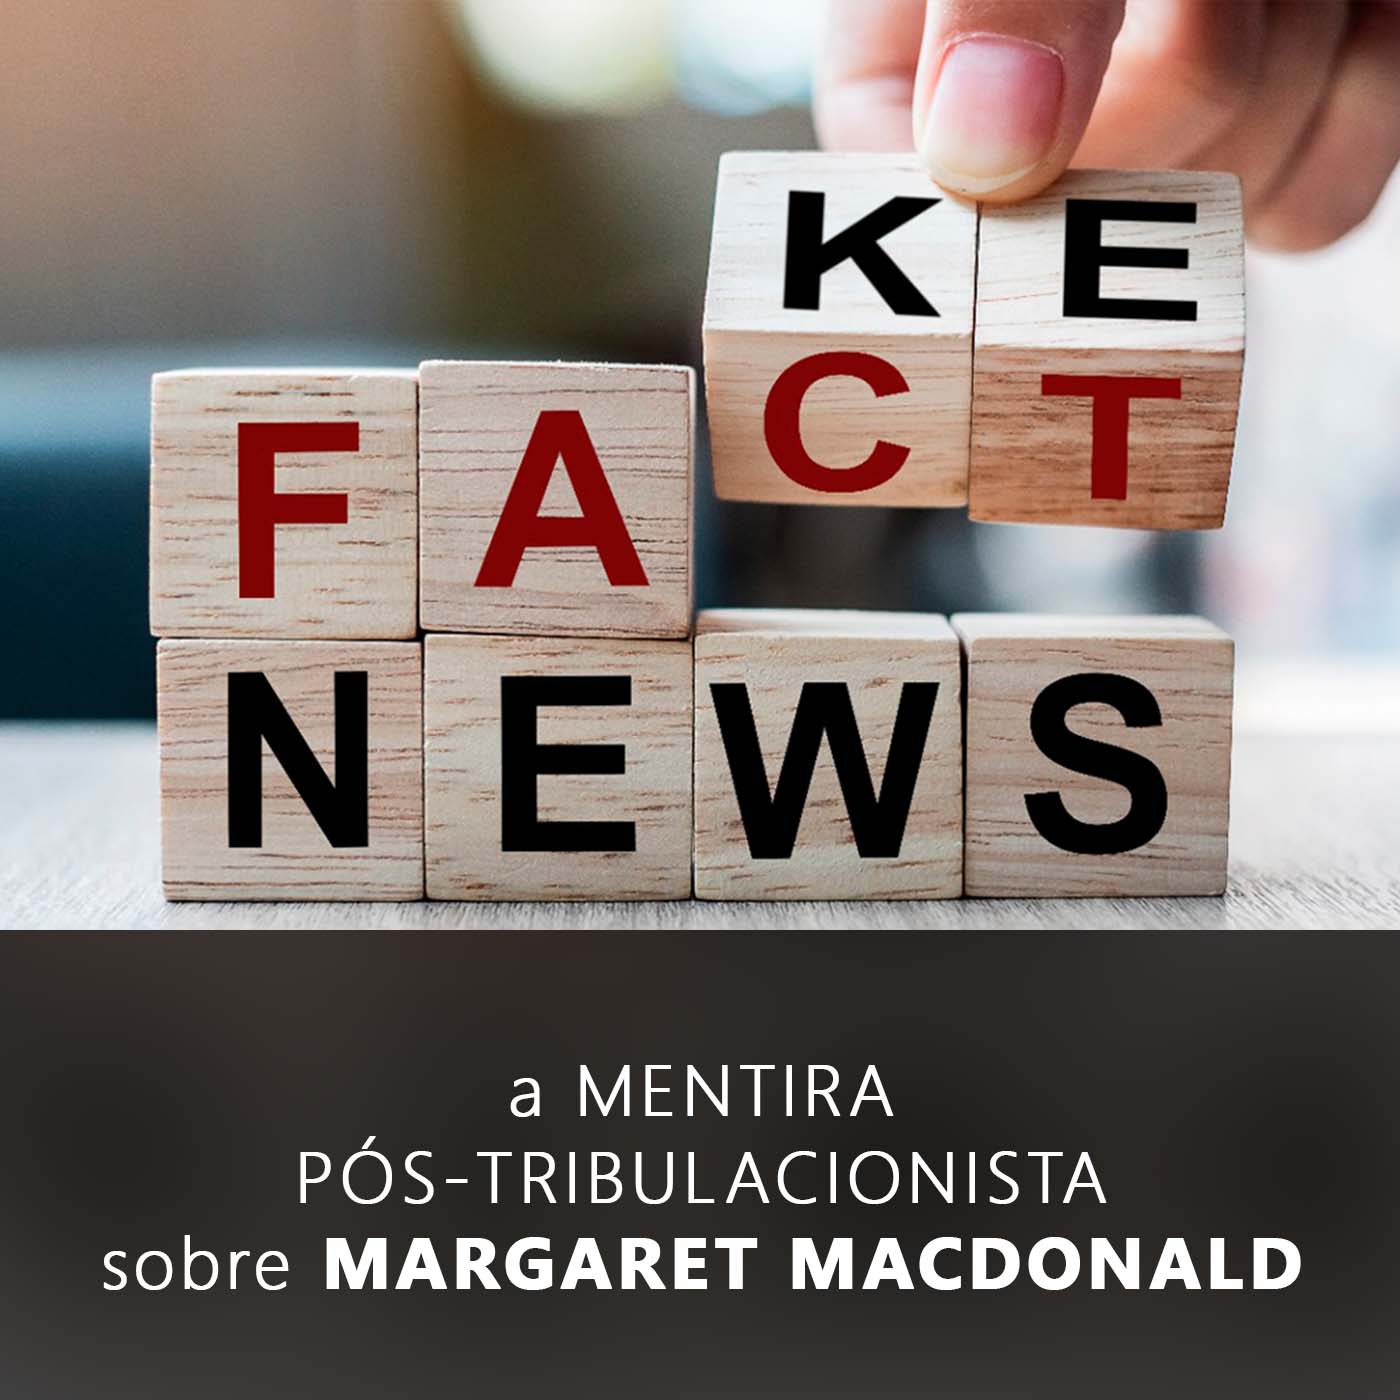 A Mentira Pós-Tribulacionista sobre Margaret MacDonald